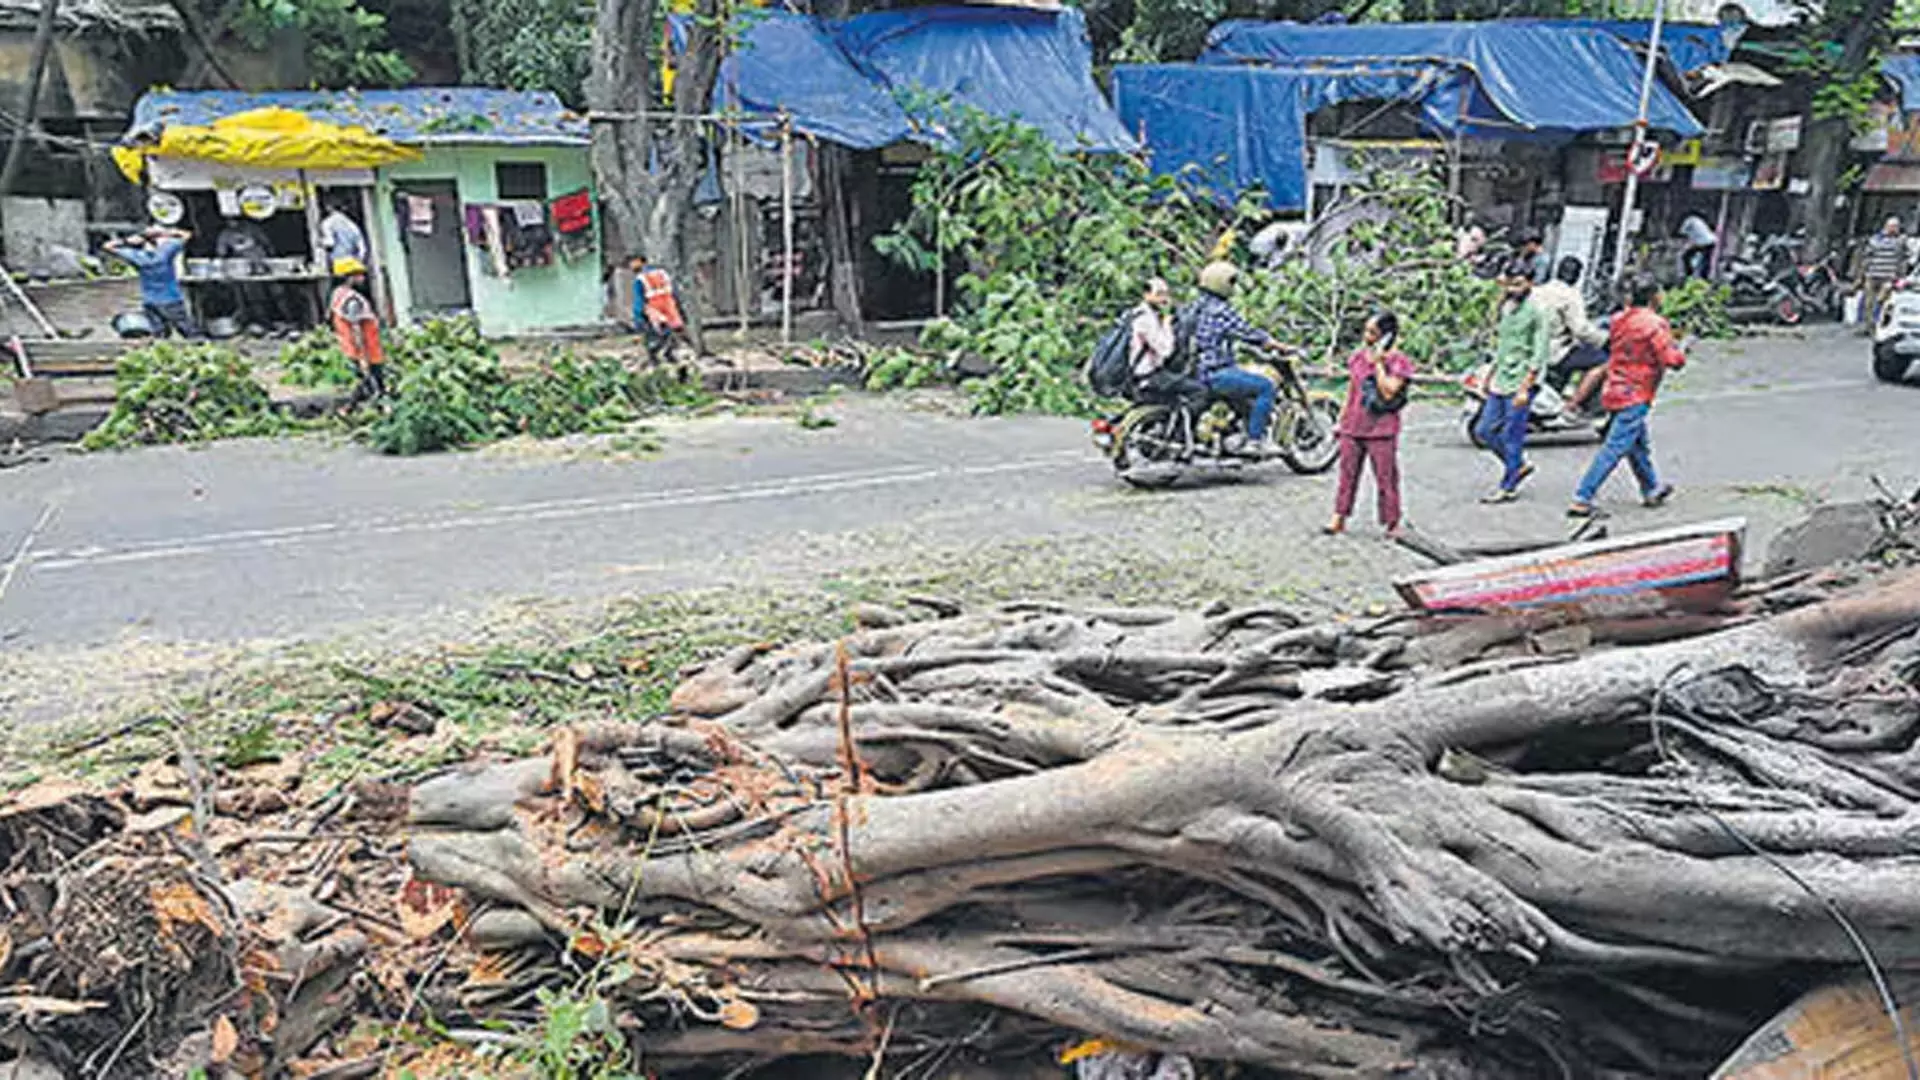 MUMBAI: मुंबई में पेड़ गिरने की घटनाओं का निदान